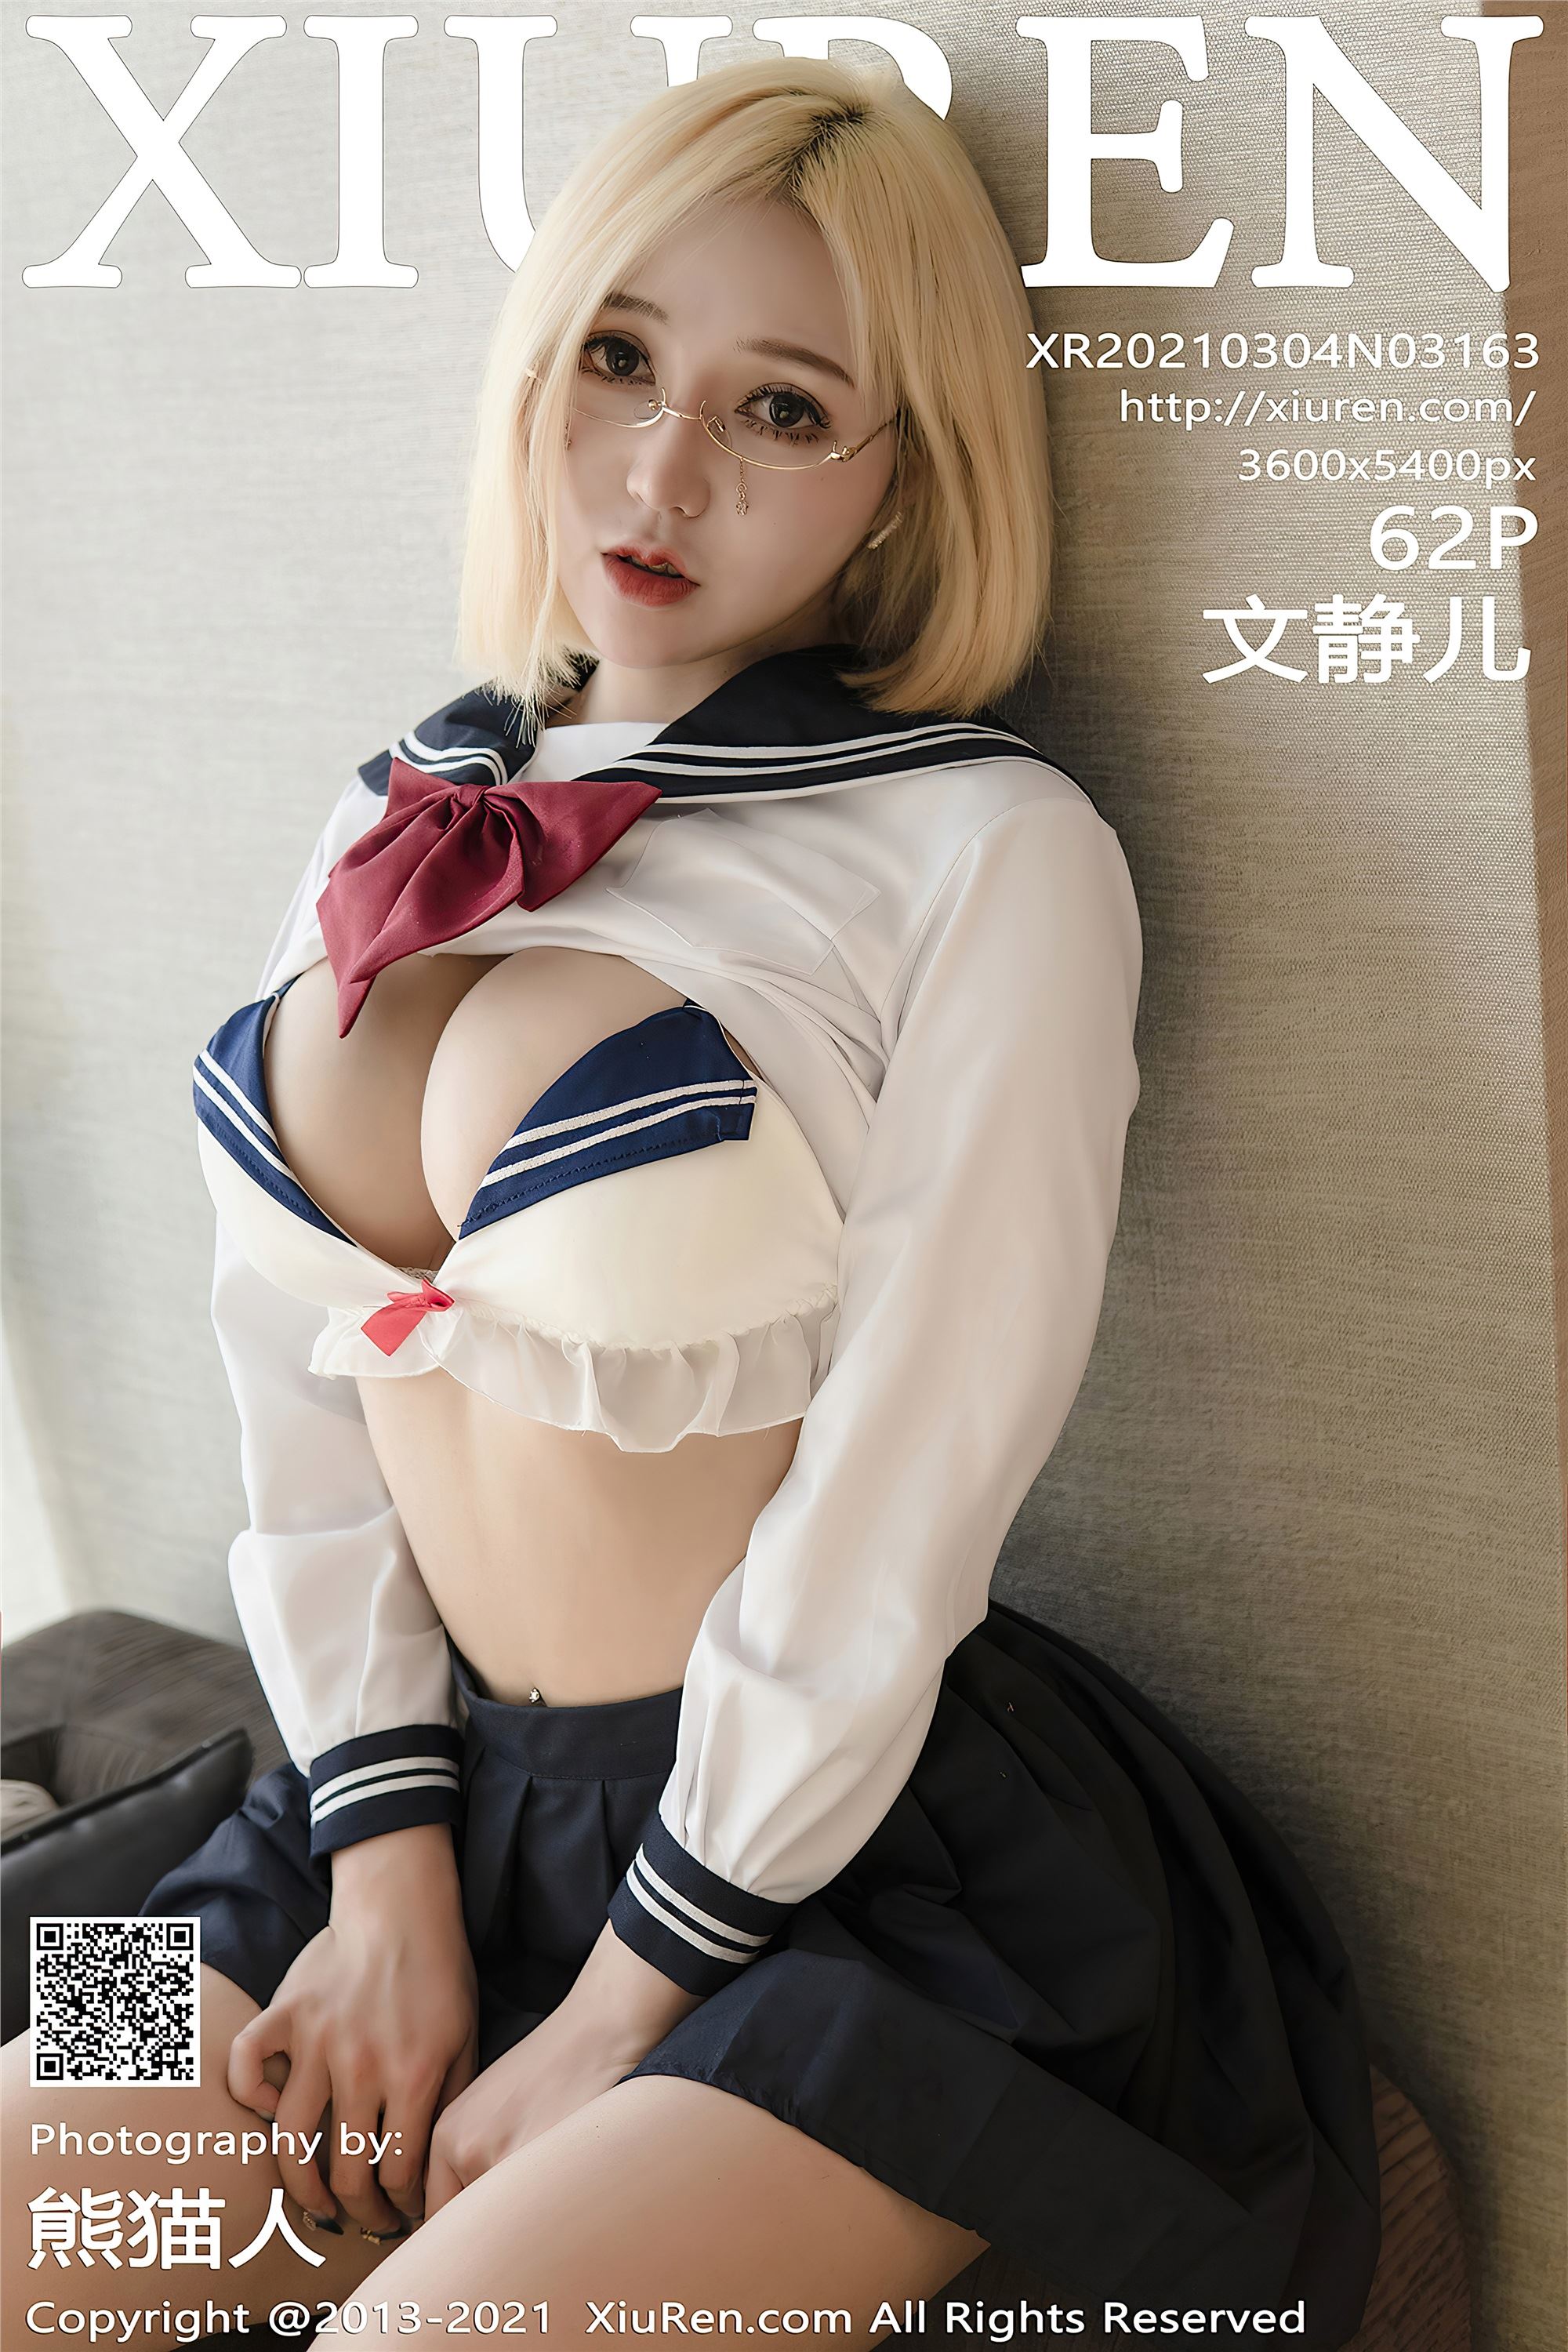 Xiuren 2021.03.04 No.3163 Wenjing school uniform breast beauty